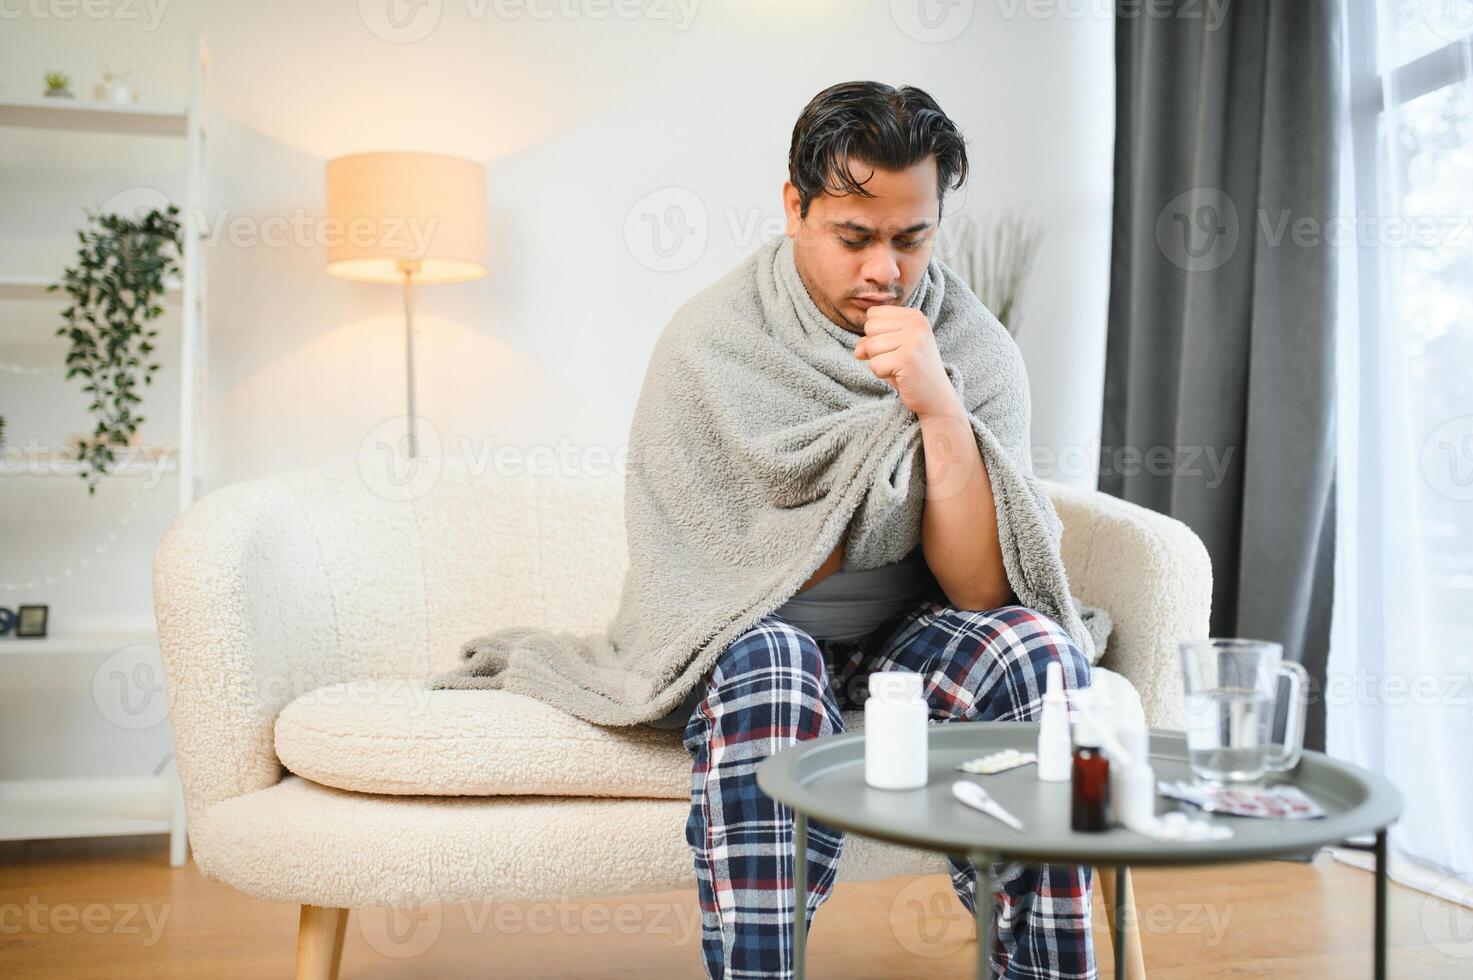 malato indiano uomo nel plaid sedersi solo tremante a partire dal freddo. malsano arabo tipo sedersi su sedia sensazione disagio provare per riscaldamento su foto